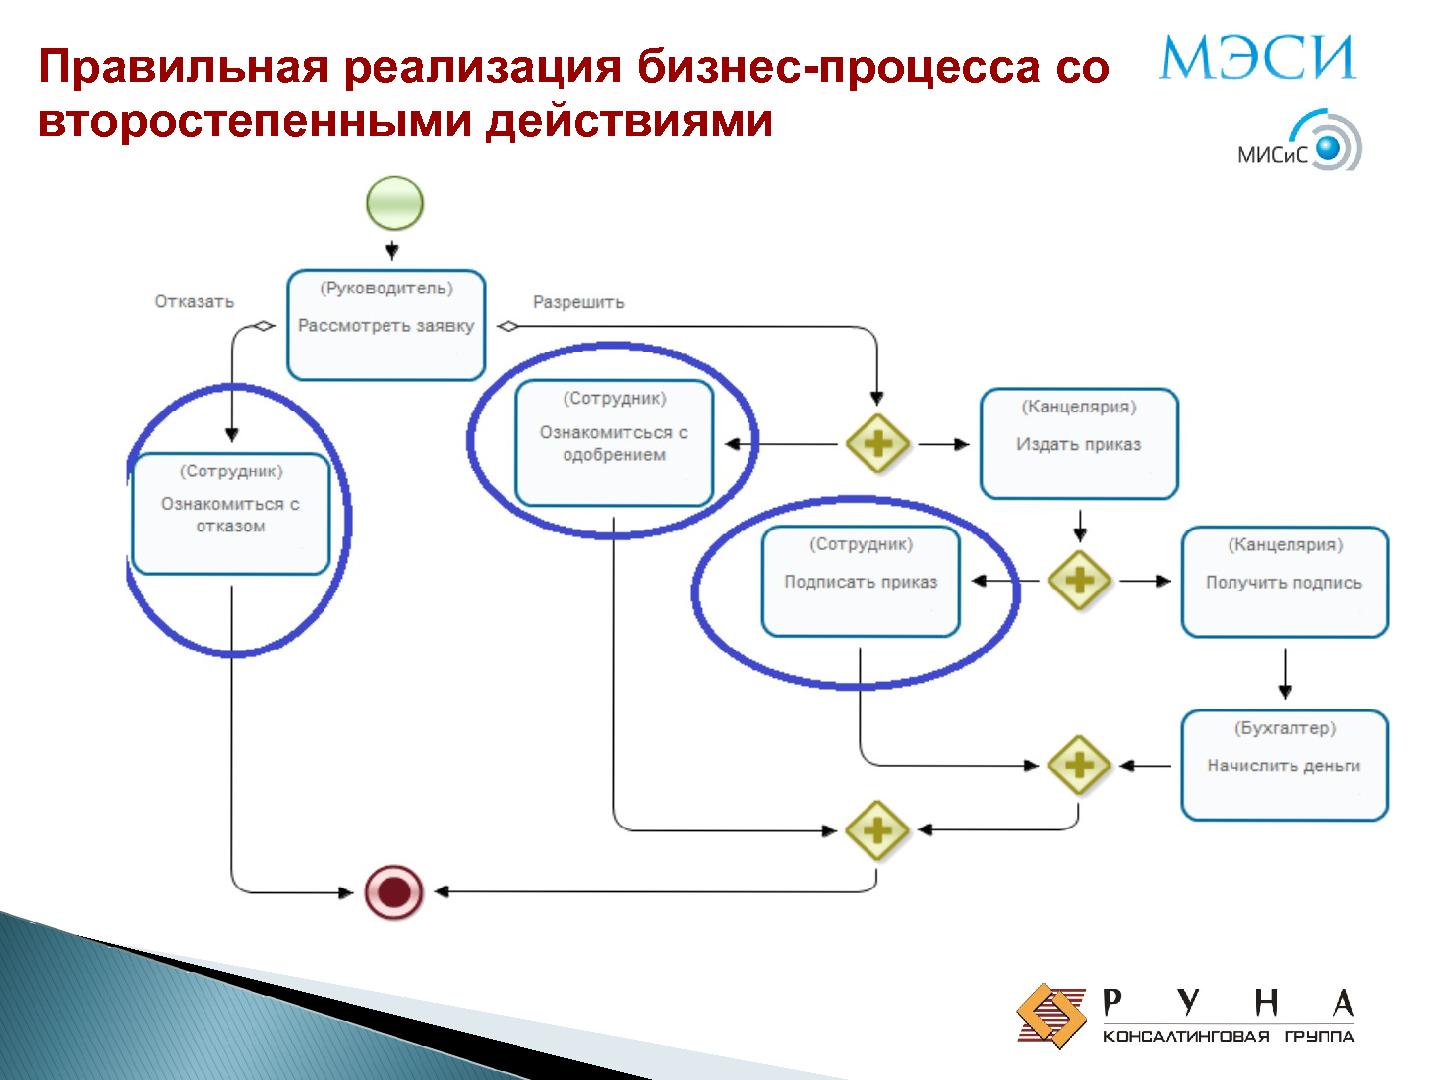 Файл:Обучение процессному управлению на свободном ПО (Андрей Михеев, OSEDUCONF-2015).pdf